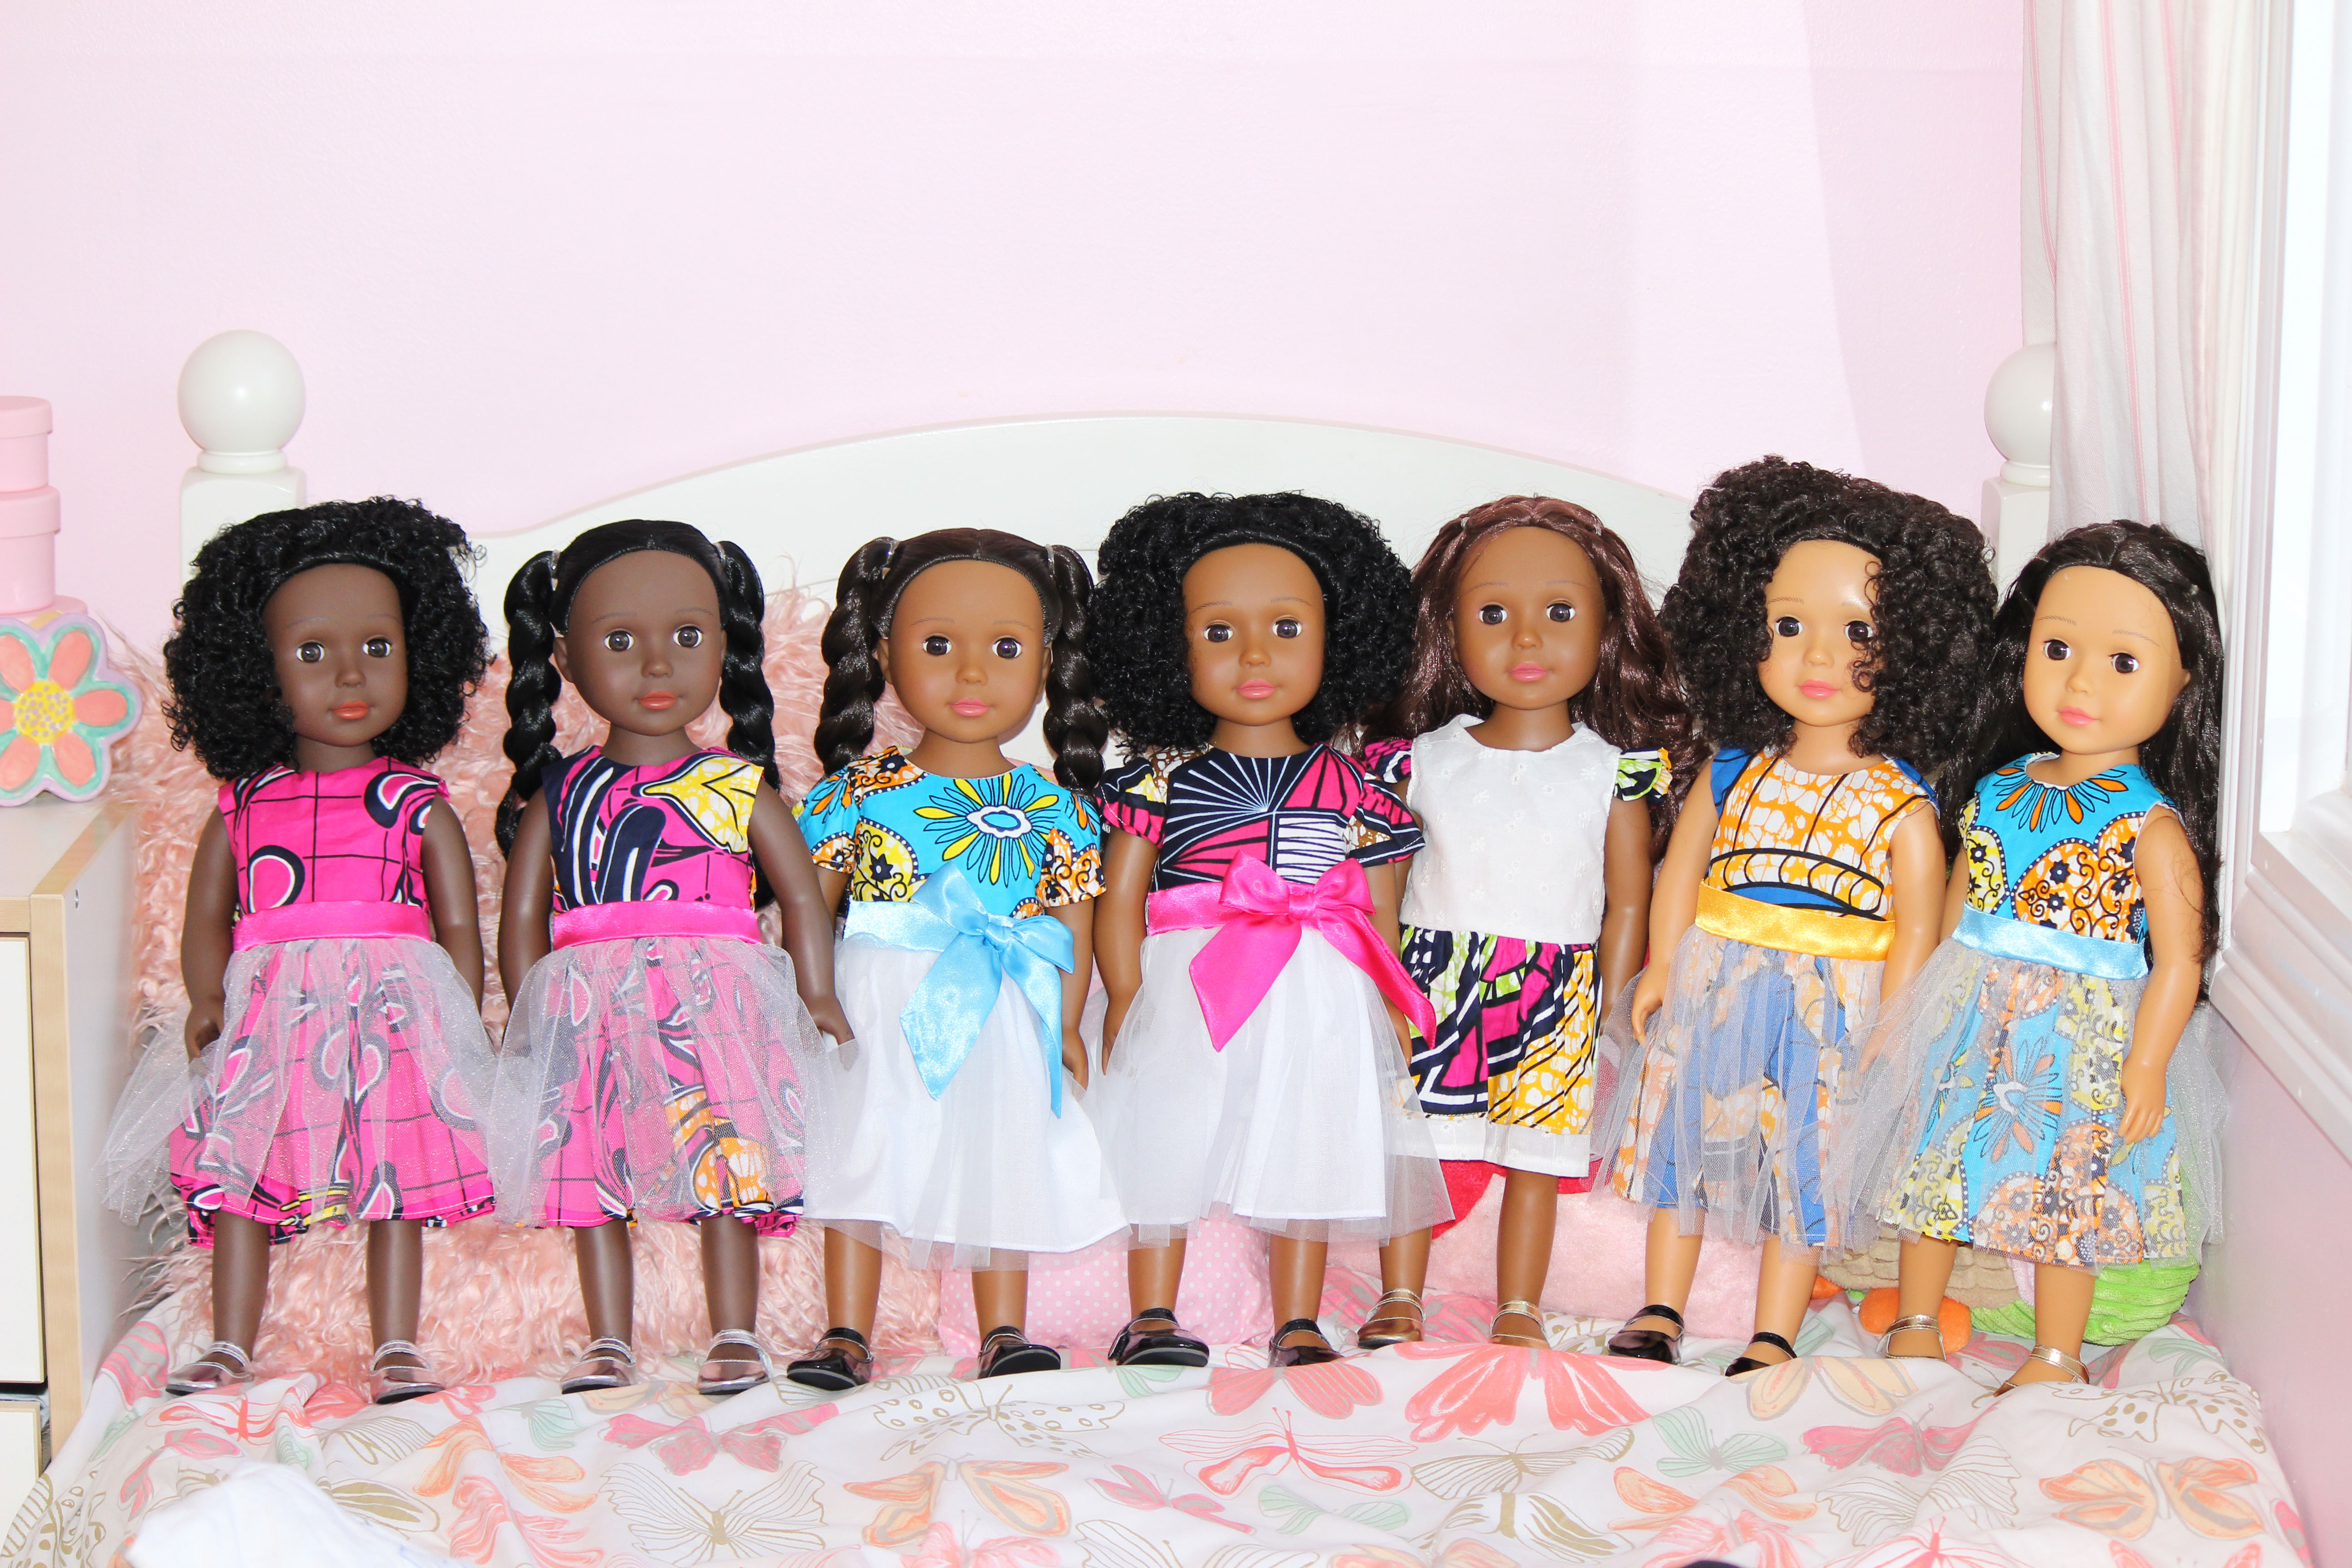 Ikuzi dolls